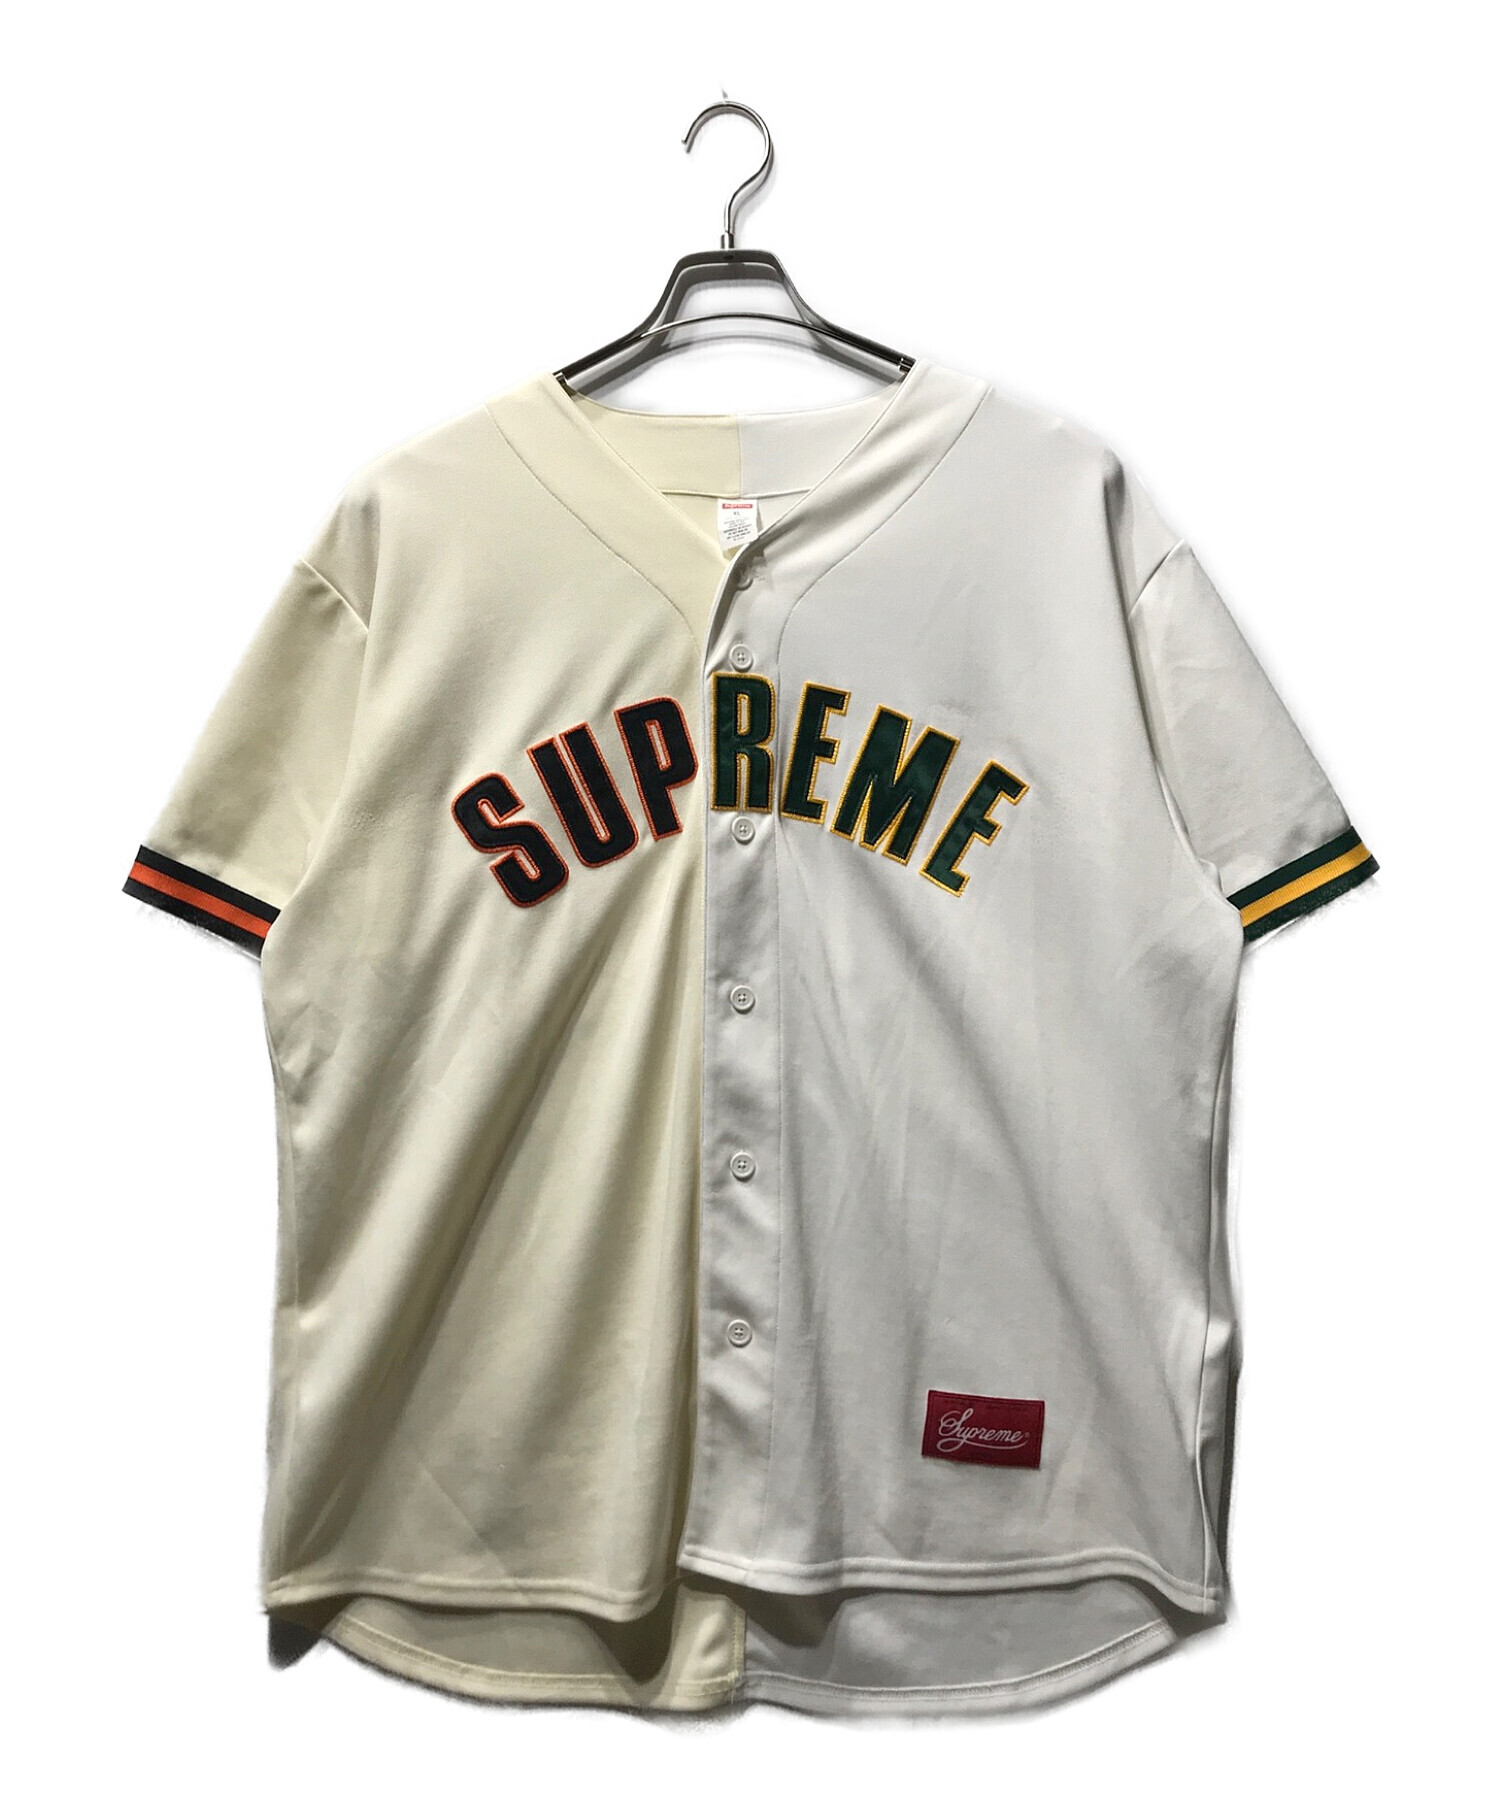 SUPREME (シュプリーム) 21SS アーチロゴ 2トーンカラー ベースボール シャツ グリーン×ホワイト サイズ:XL